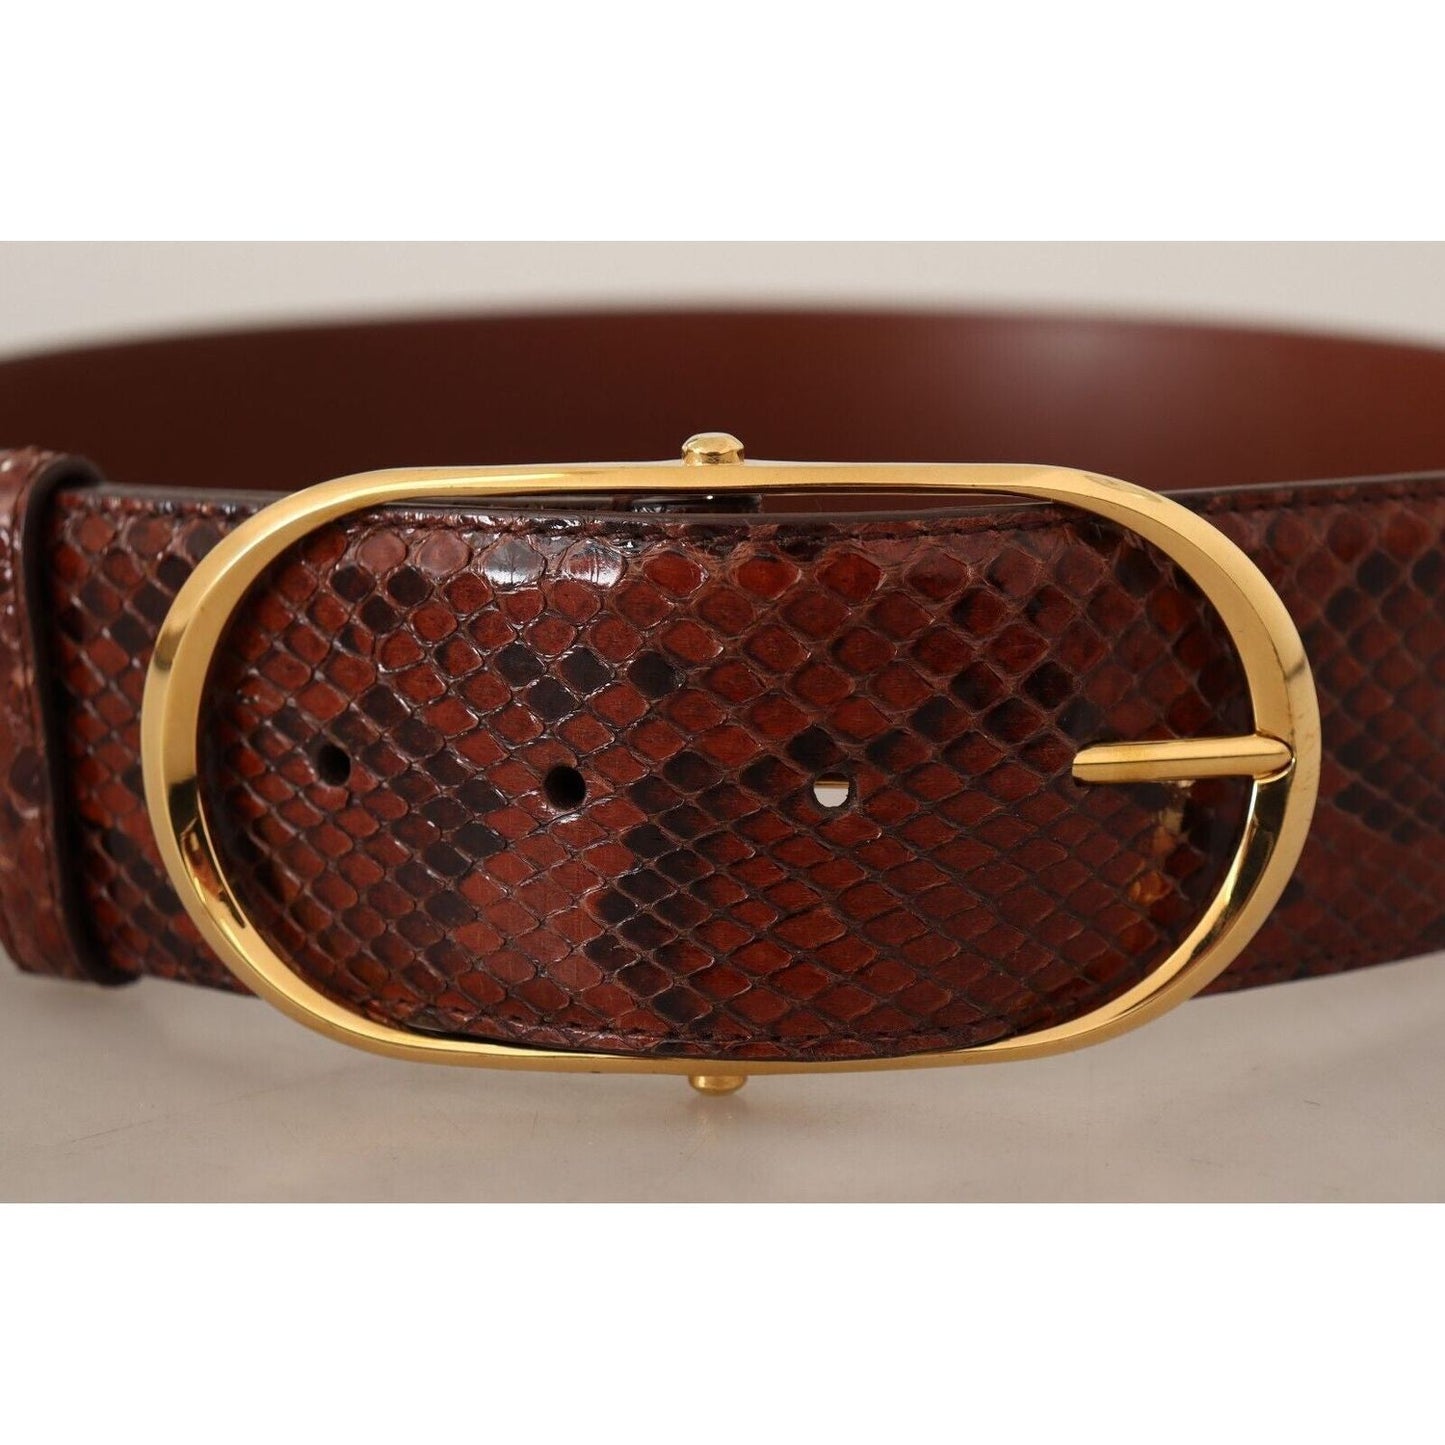 Dolce & Gabbana Elegant Python Snake Skin Leather Belt brown-exotic-leather-gold-oval-buckle-belt-6 WOMAN BELTS